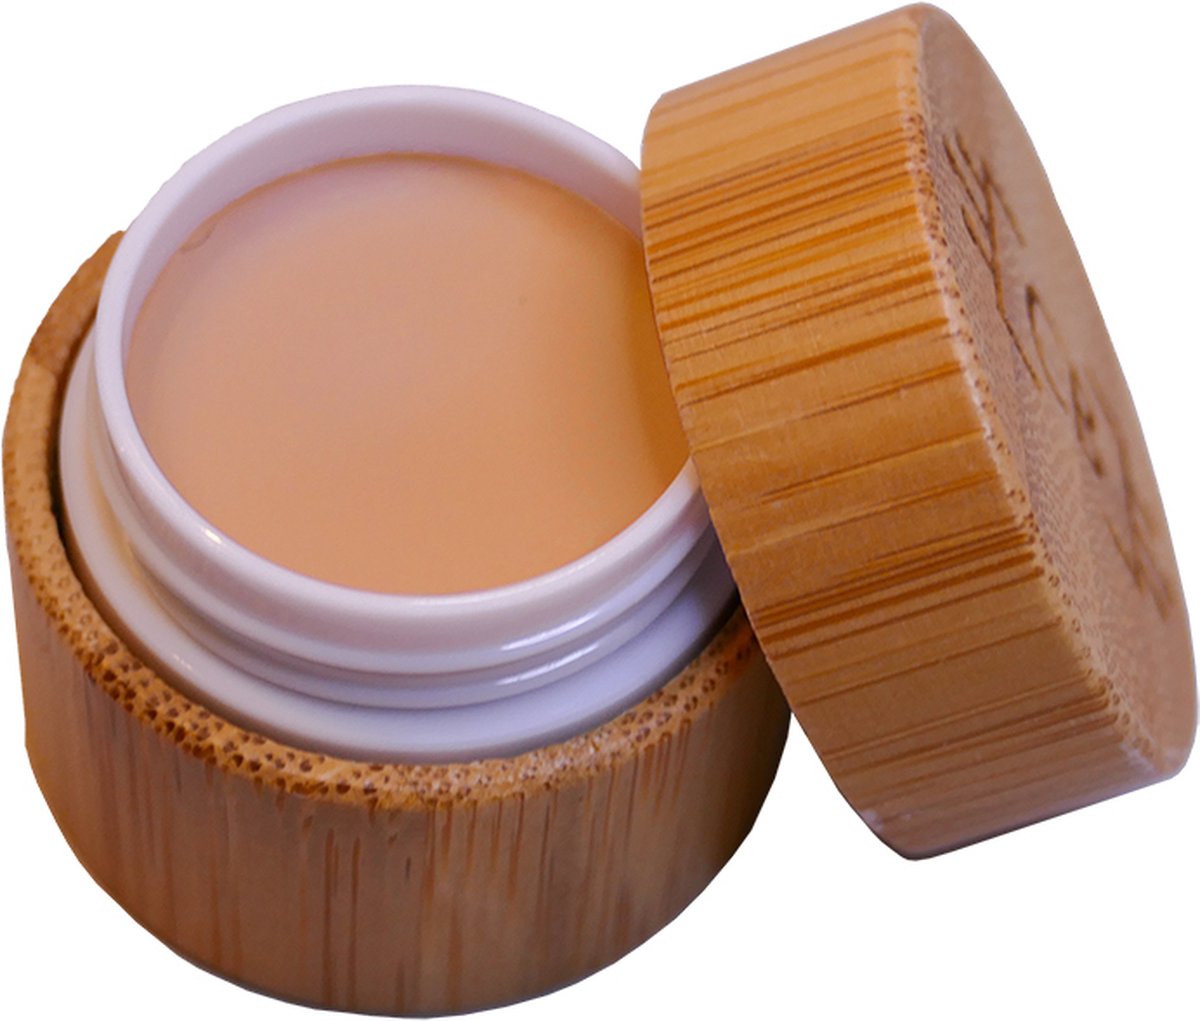 Cosm.Ethics Bar Concealer bamboe duurzame veganistische makeup kerst cadeau - medium beige